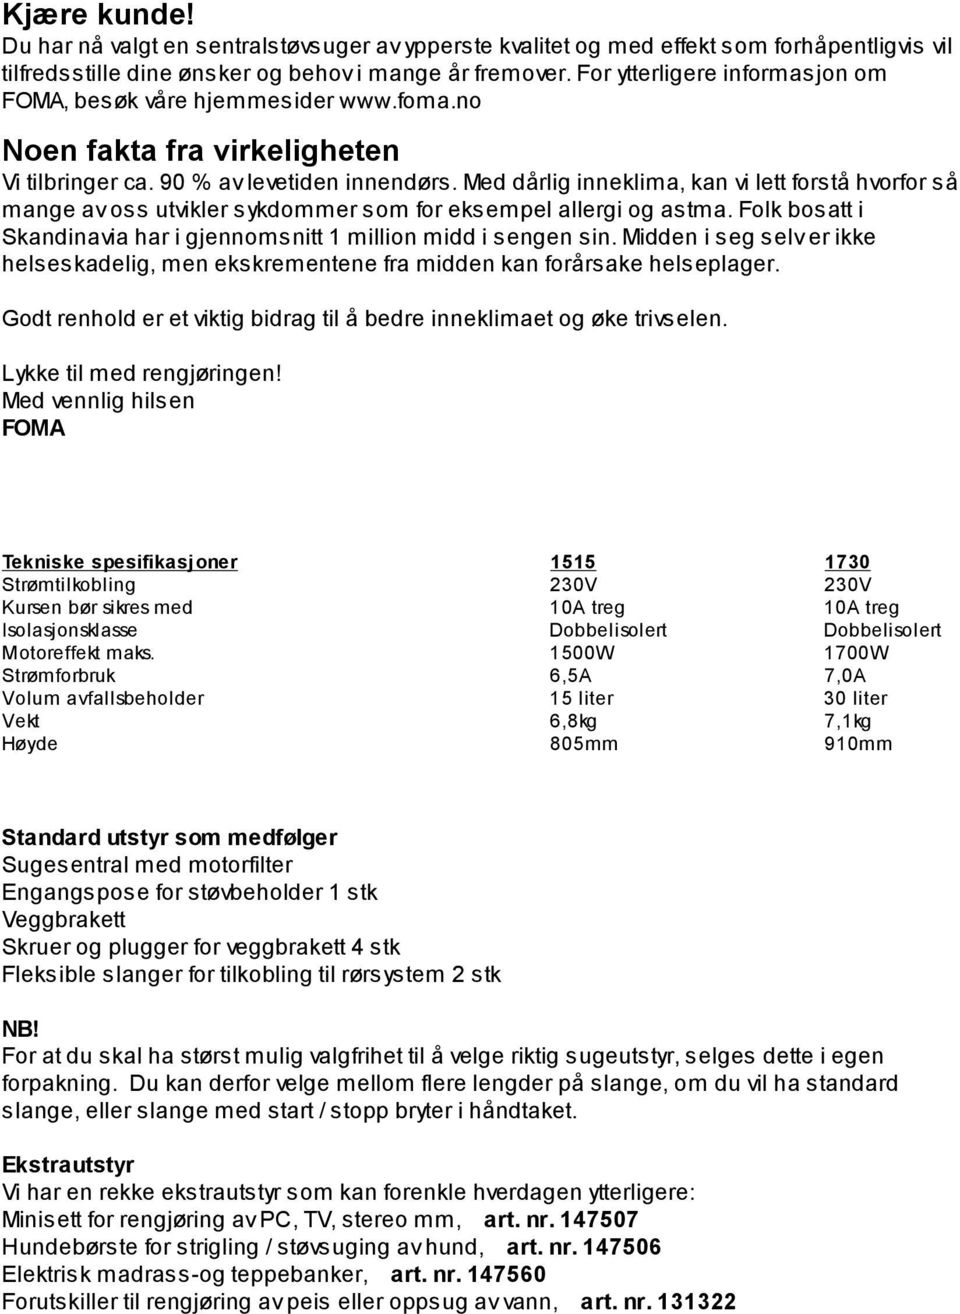 Bruksanvisning Norsk og Svensk - PDF Free Download